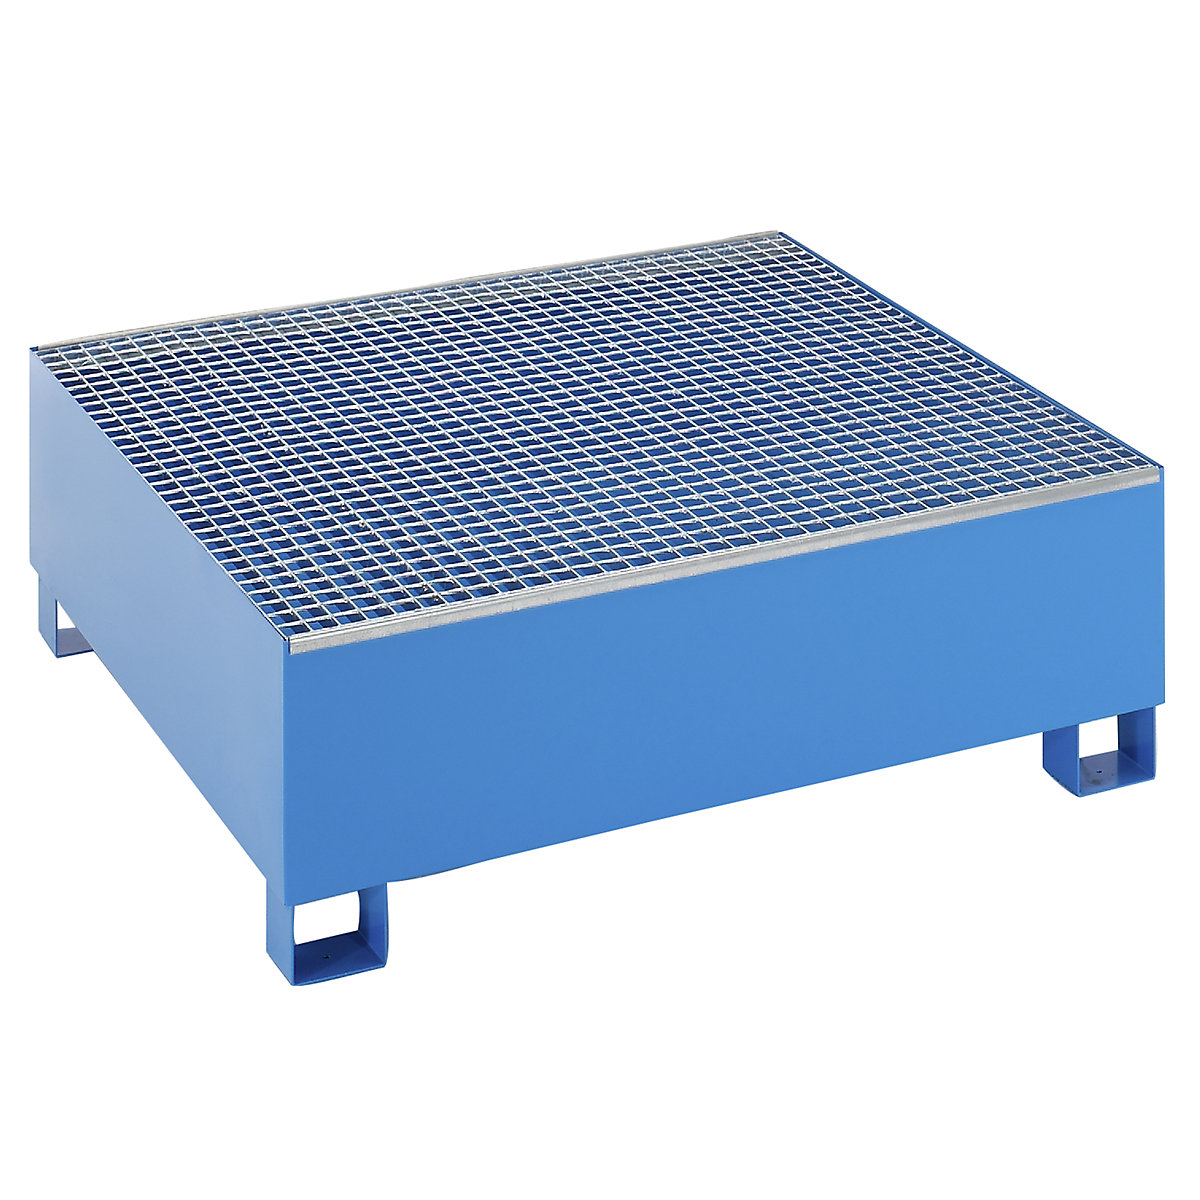 EUROKRAFTbasic Stahl-Auffangwanne für 200-l-Fässer, LxBxH 1200 x 1200 x 415 mm, ohne Zulassung, blau pulverbeschichtet, mit Gitterrost